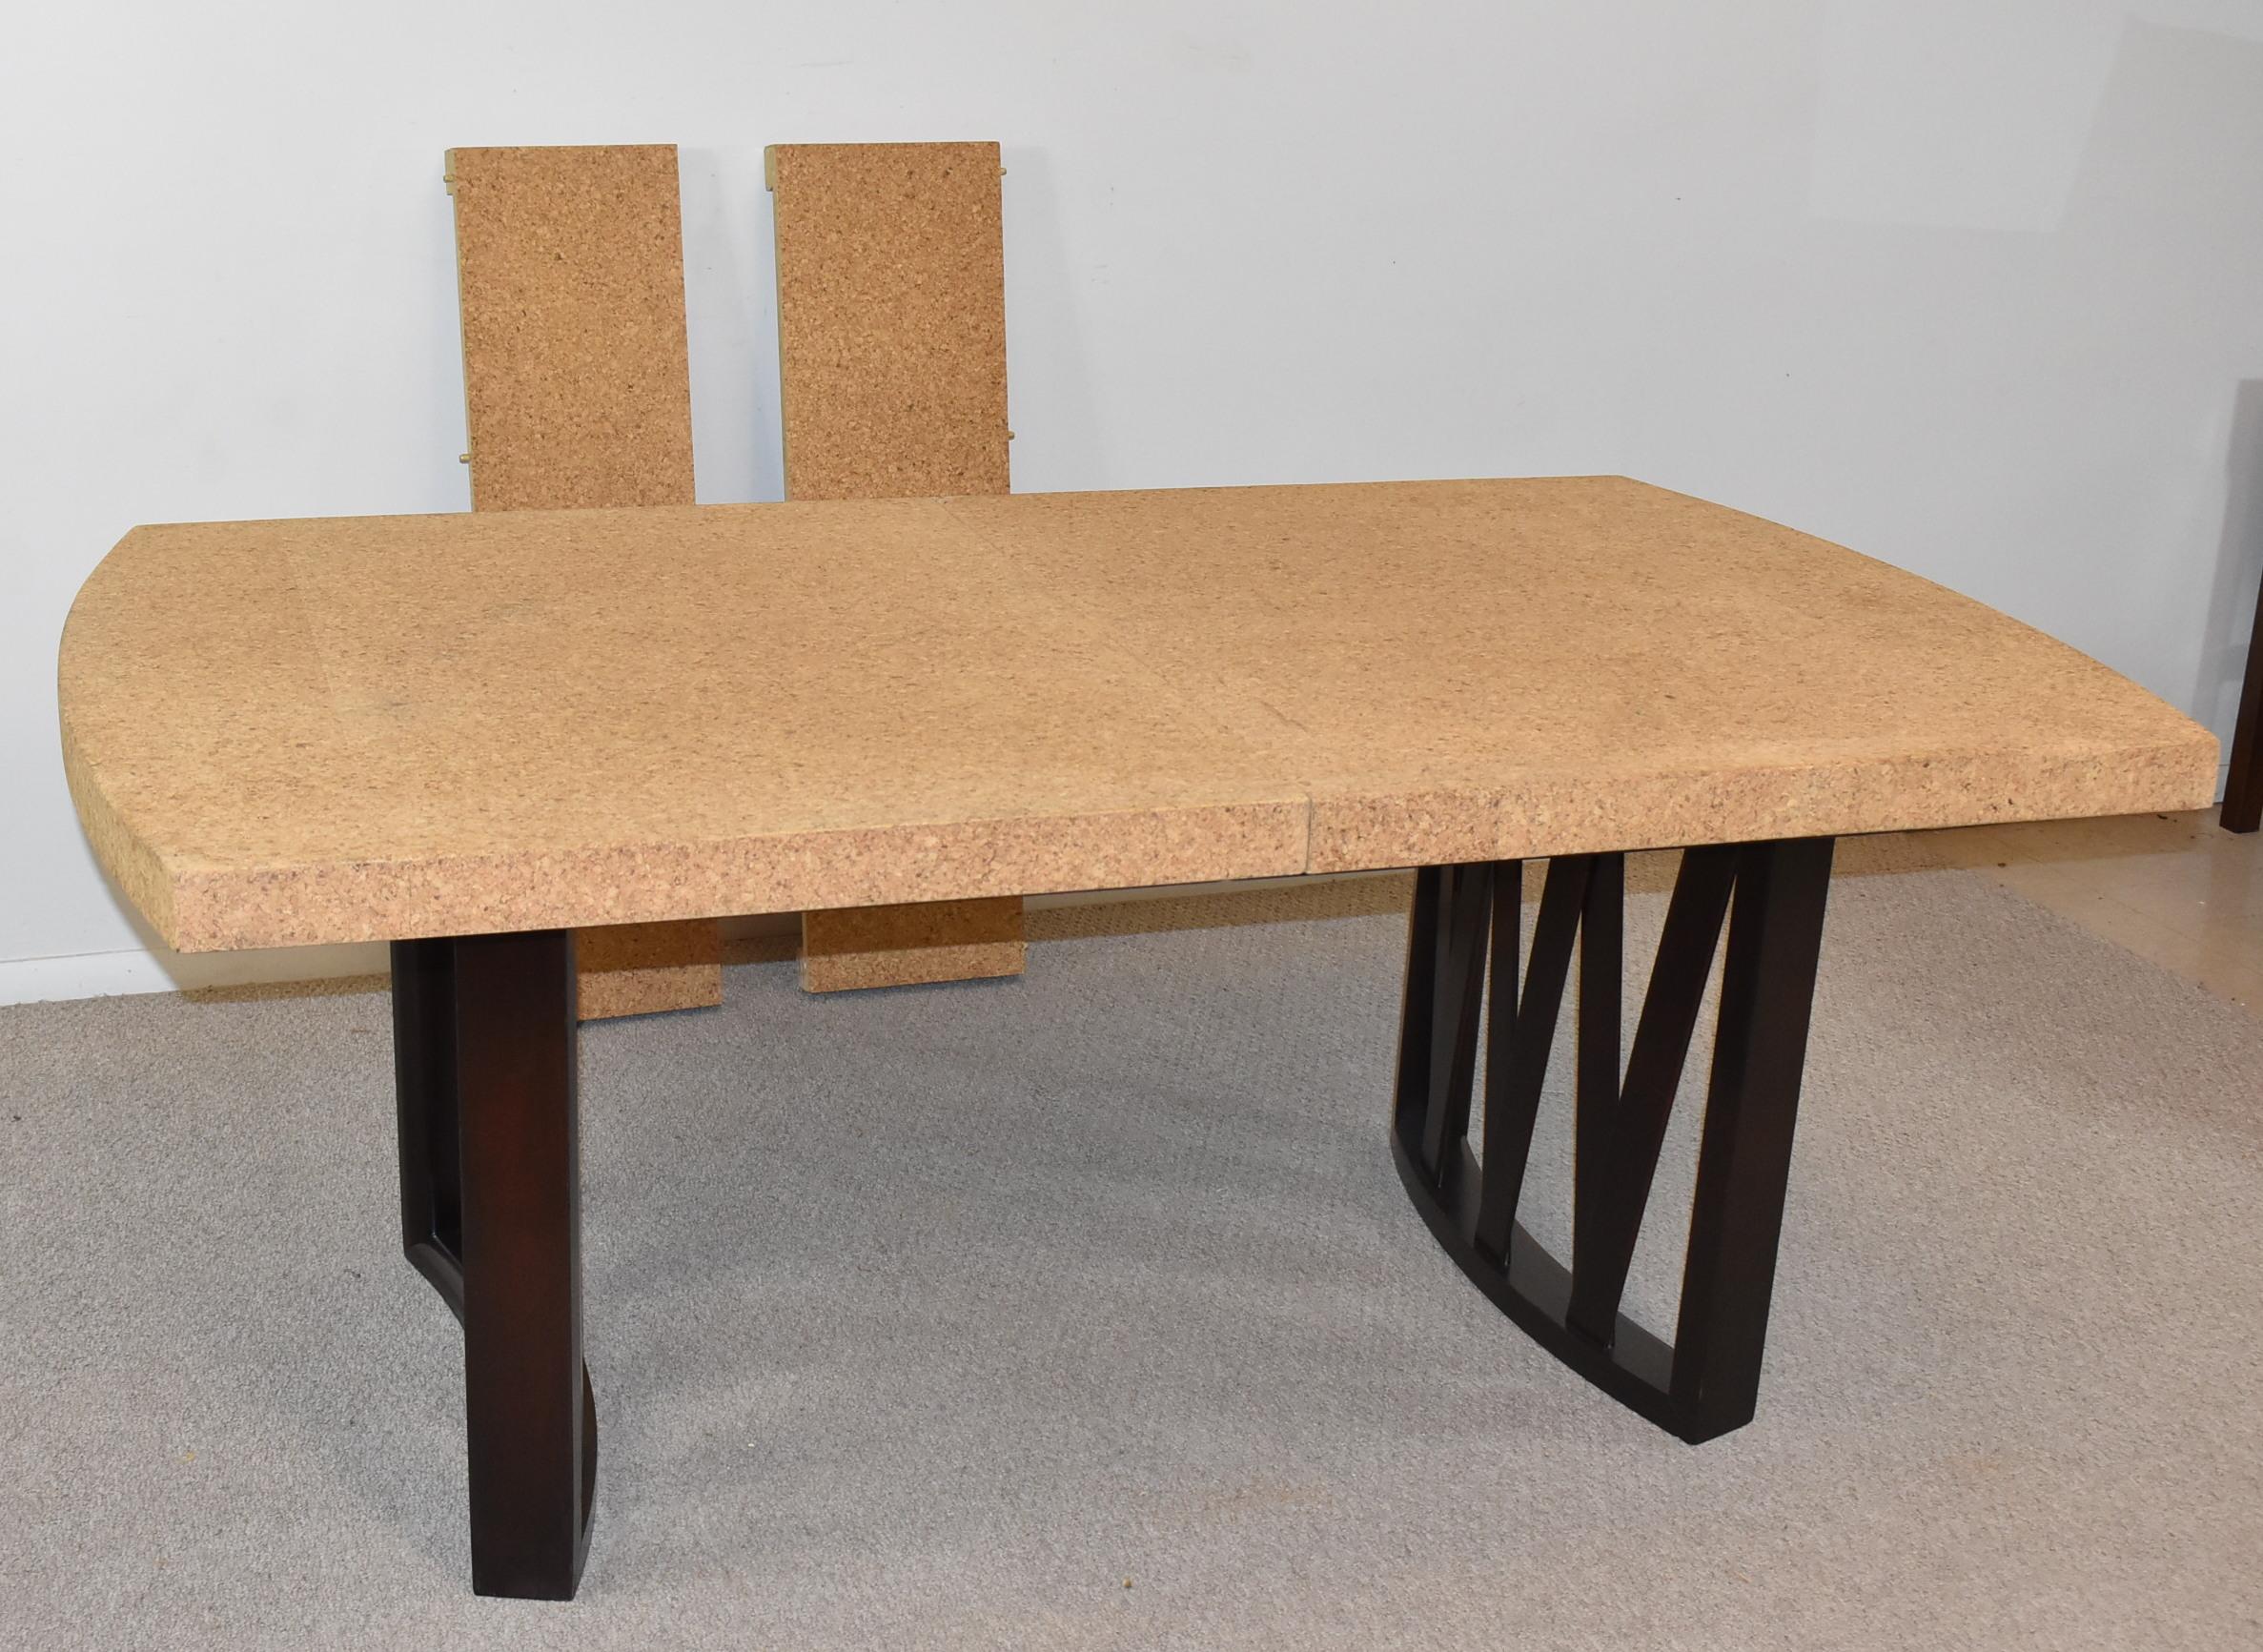 Dieser Esstisch mit Korkplatte wurde von Paul Frankl für Johnson Furniture Company entworfen. Die Platte ist aus Naturkork und die Beine sind aus geschwungenem Walnussholz. Die Beine haben eine ebonisierte Oberfläche mit dekorativen, sich kreuzenden